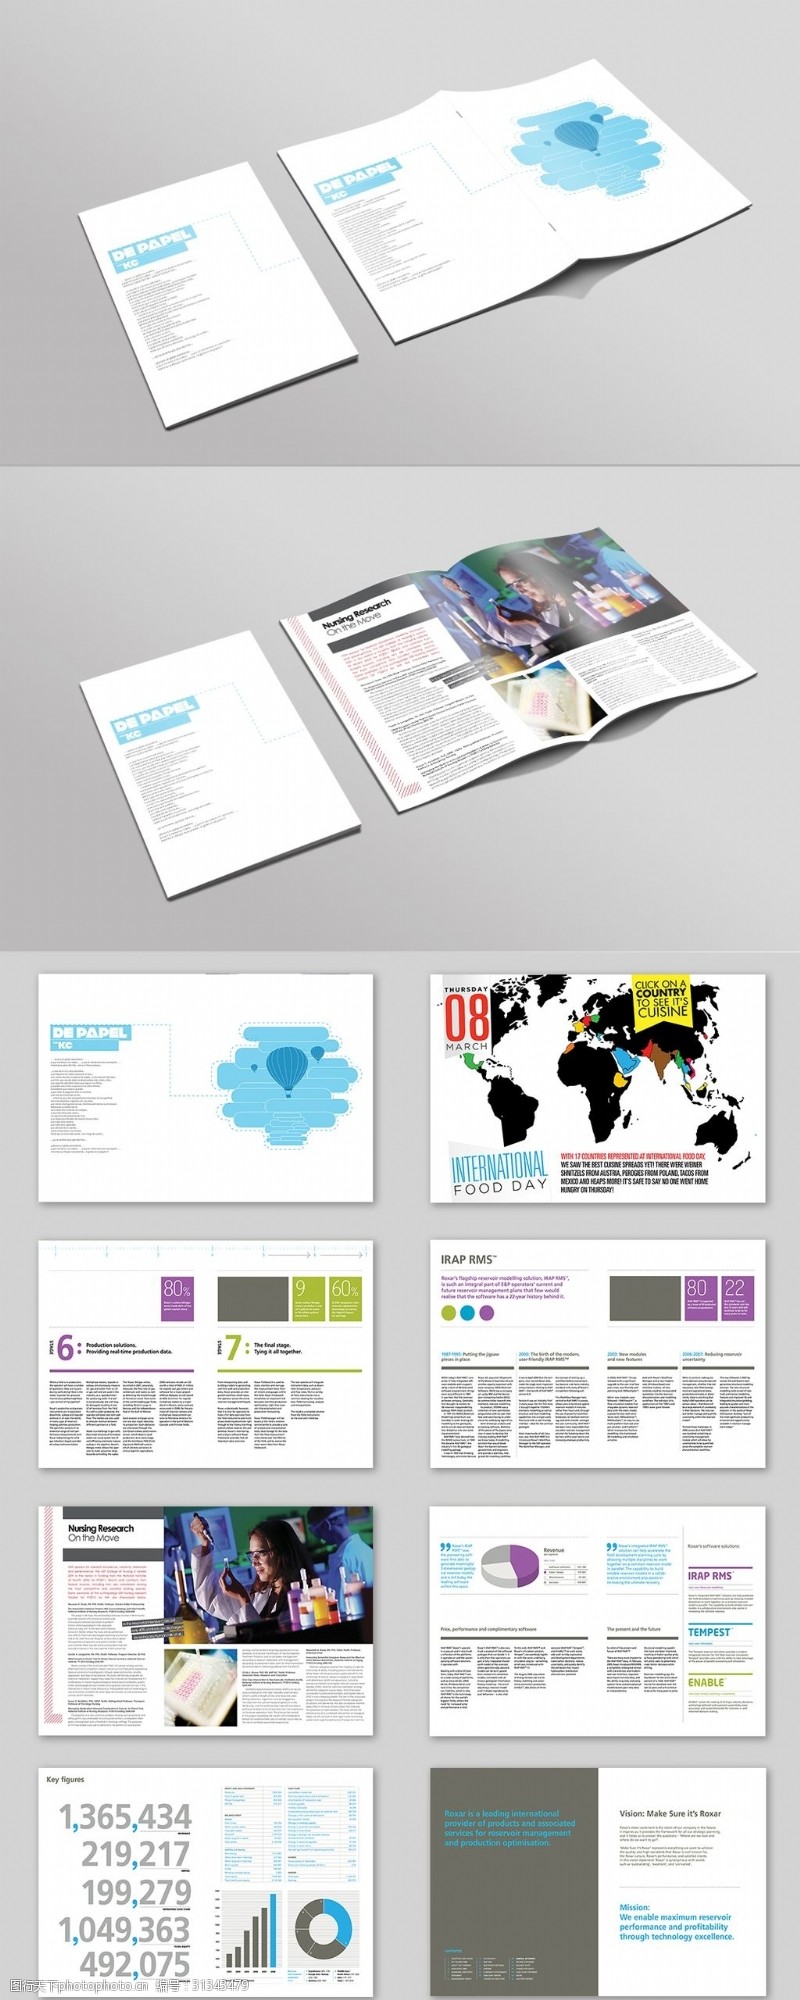 企业画册模板下载创意企业招商画册封面整套设计模板下载